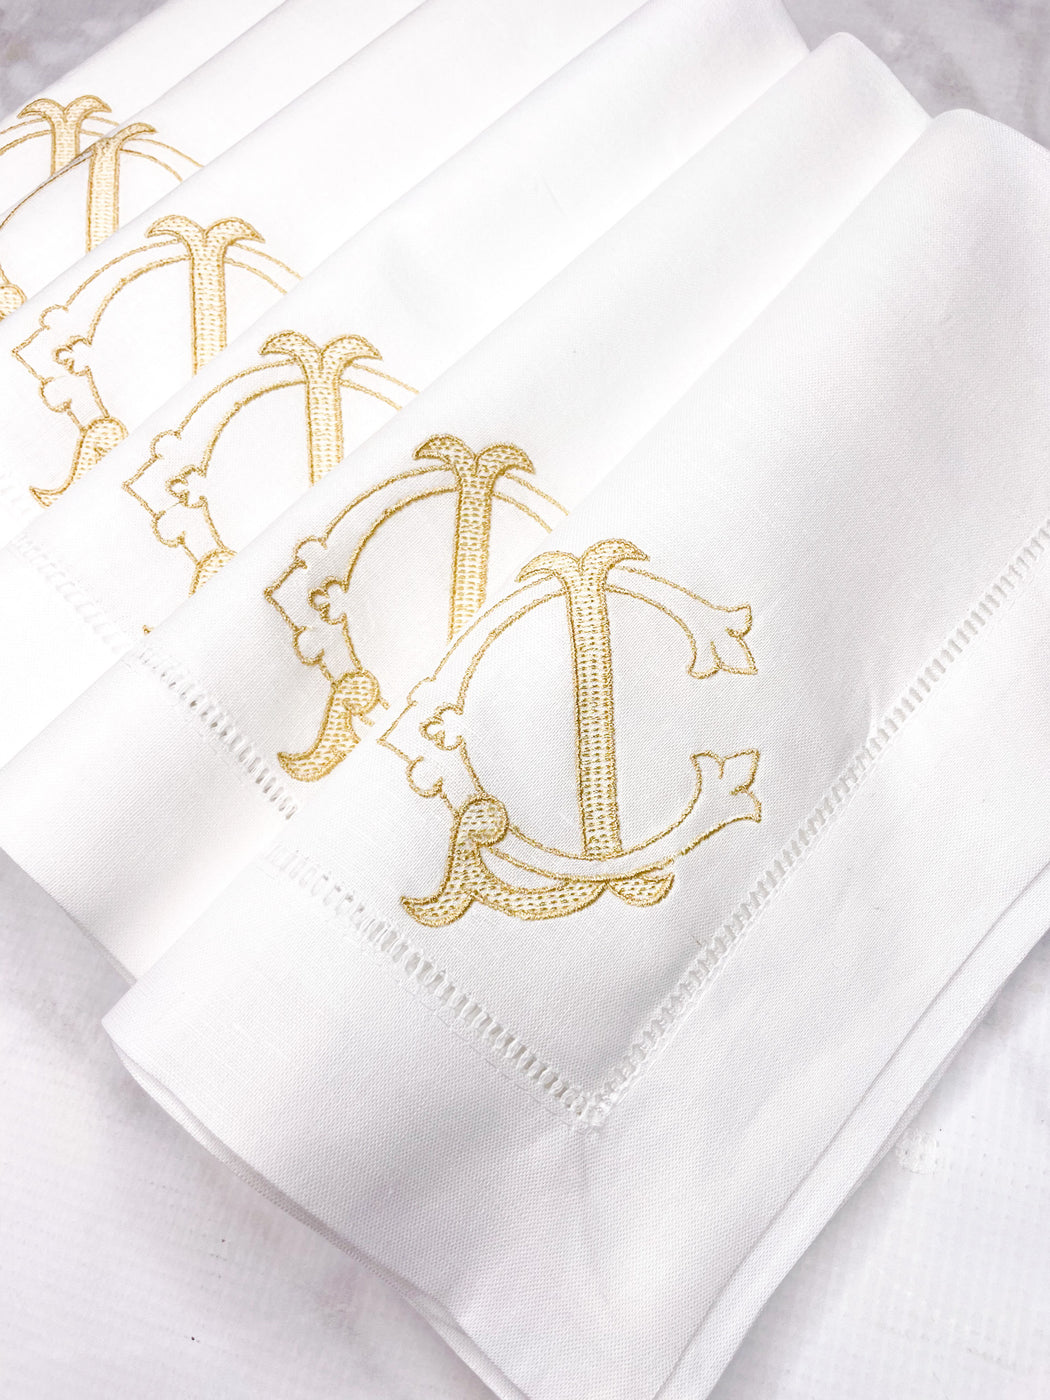 Linen/Cotton Blend Hemstitched Dinner Napkins - Antique Chic 2 Letter Monogram